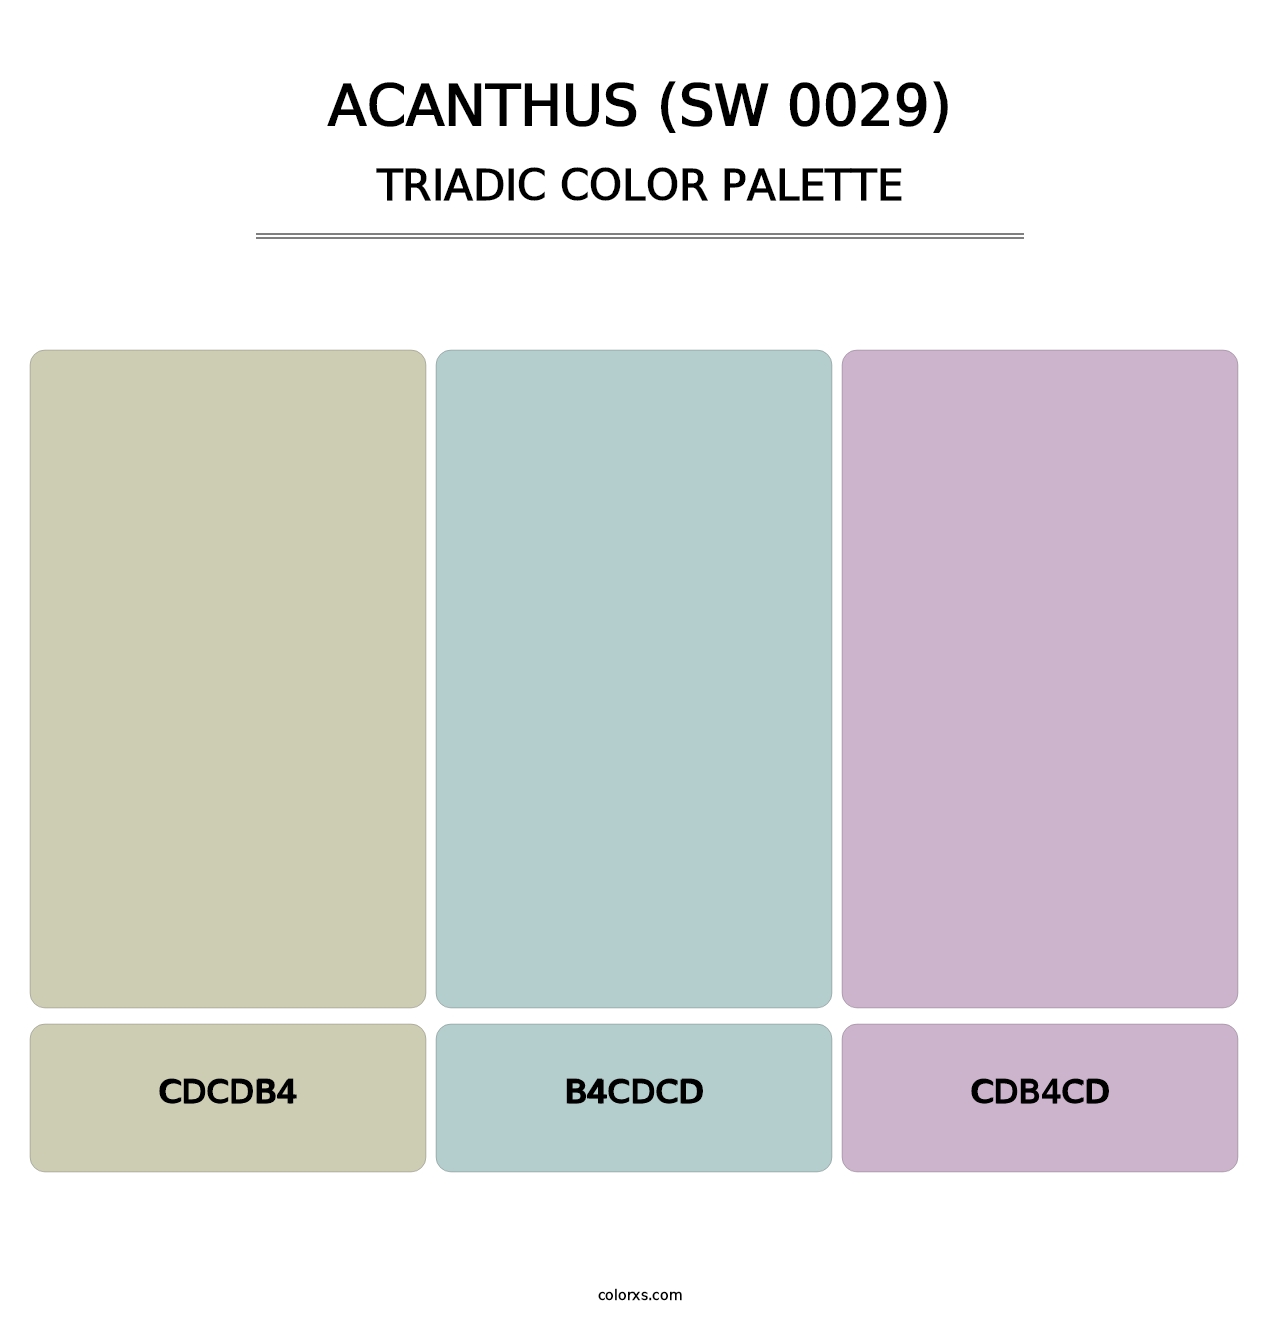 Acanthus (SW 0029) - Triadic Color Palette